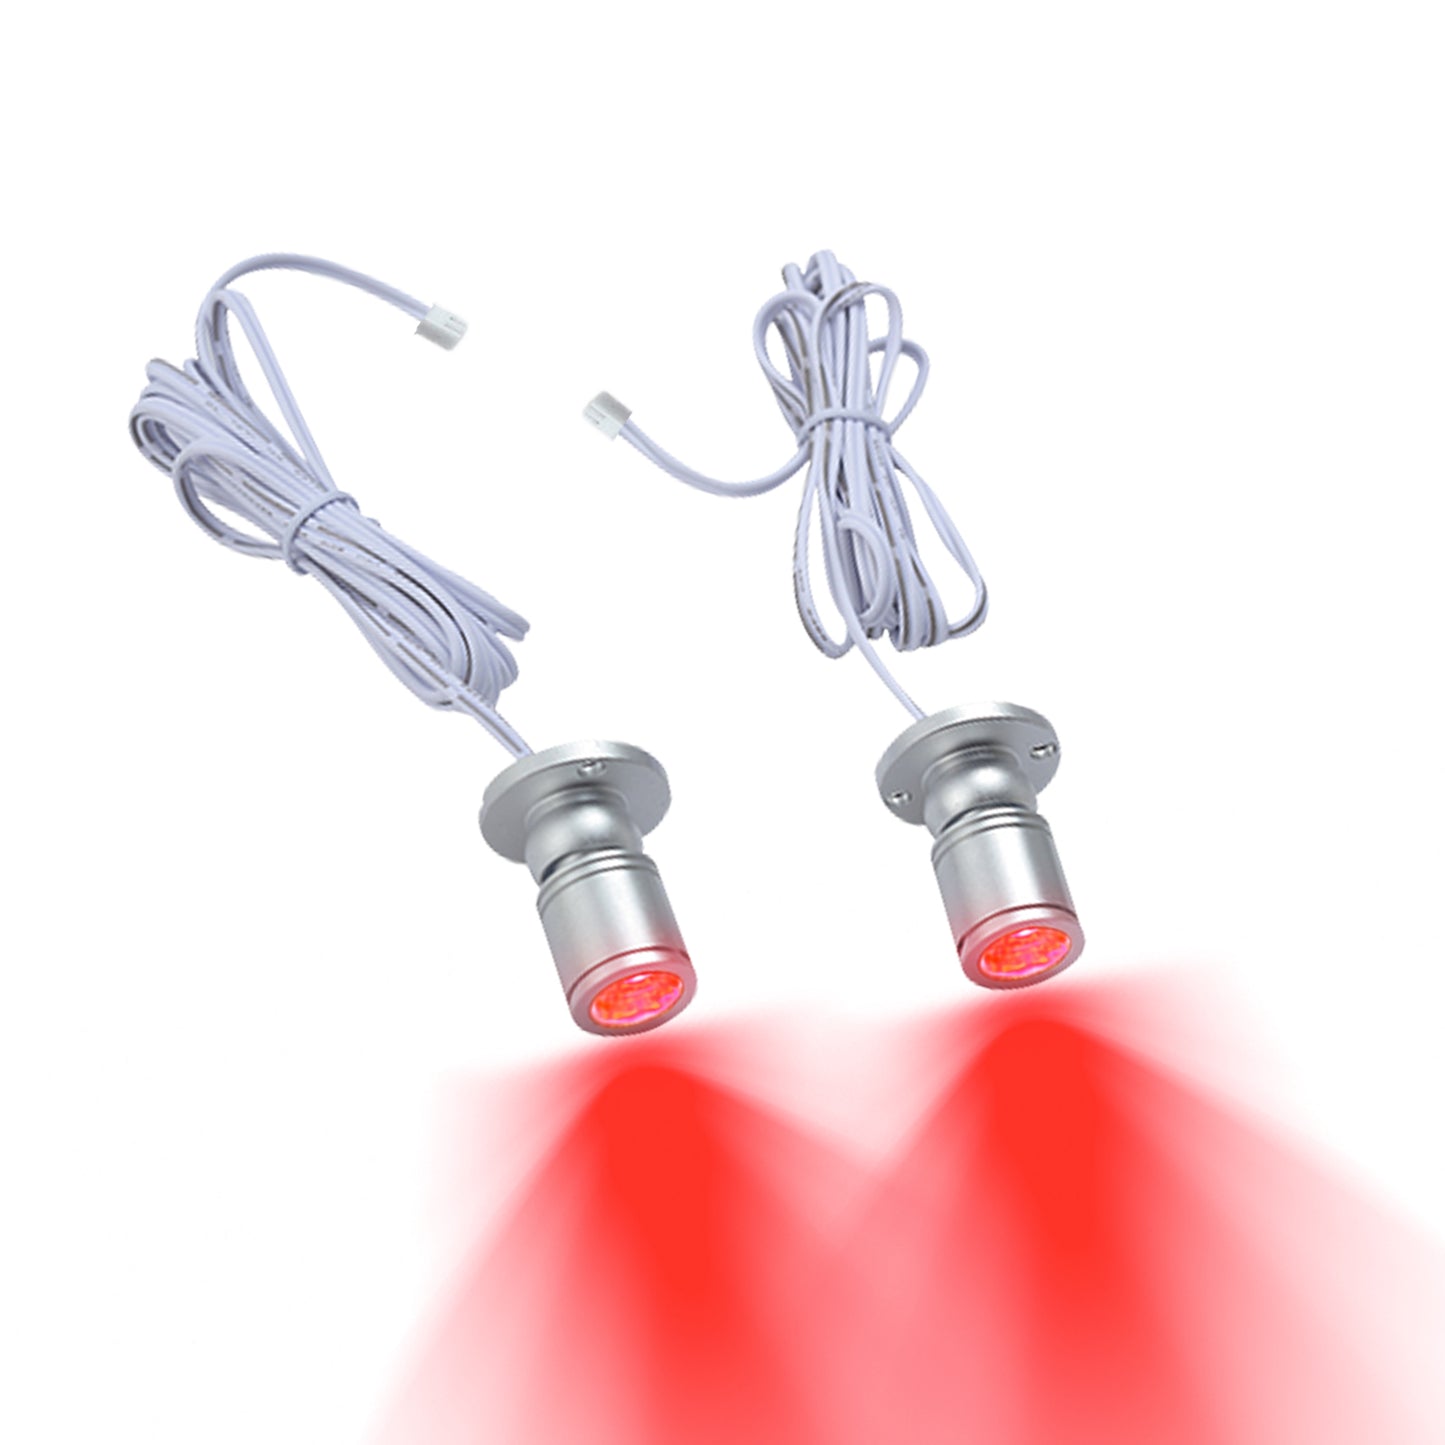 FSLiving 2個入 赤 ライト追加用 ミニスポットライト 調光対応 ジュエリー ショーケース ディスプレイ 間接照明用 照明器具